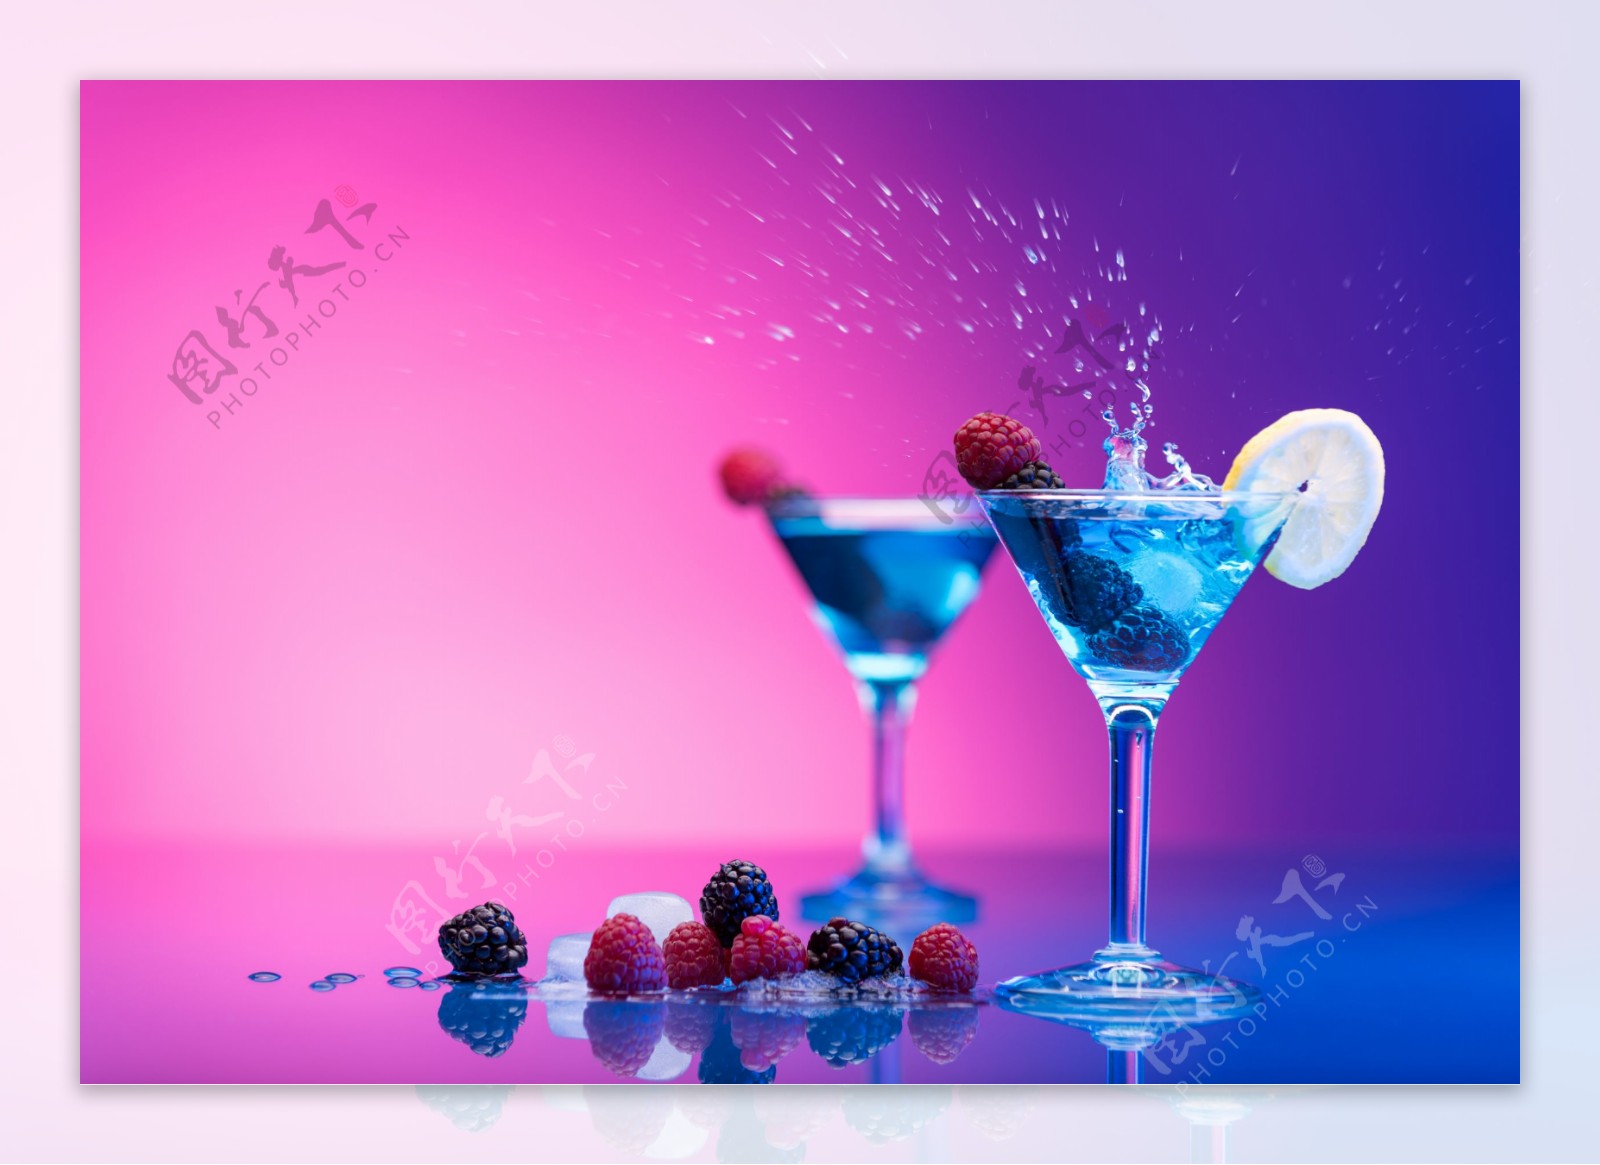 蓝色鸡尾酒马蒂尼鸡尾酒 库存图片. 图片 包括有 马蒂尼鸡尾酒, 酒精, 鸡尾酒, 液体, 碗筷, 产品, 时兴 - 6764017